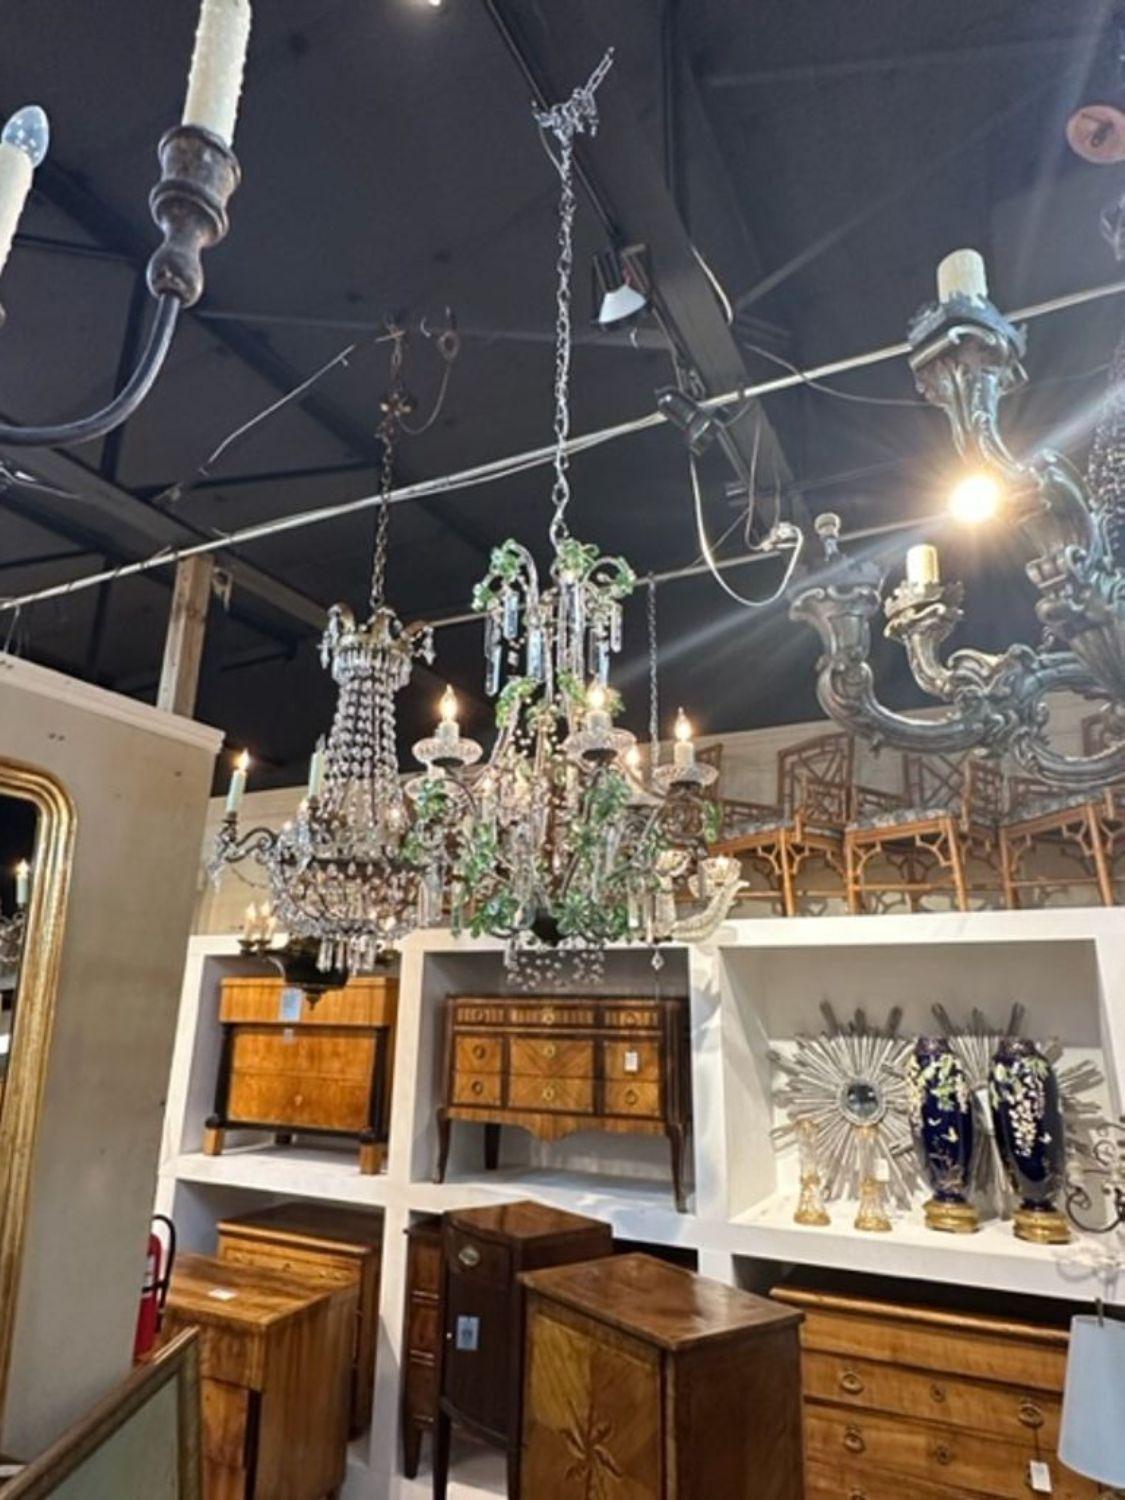 green beaded chandelier